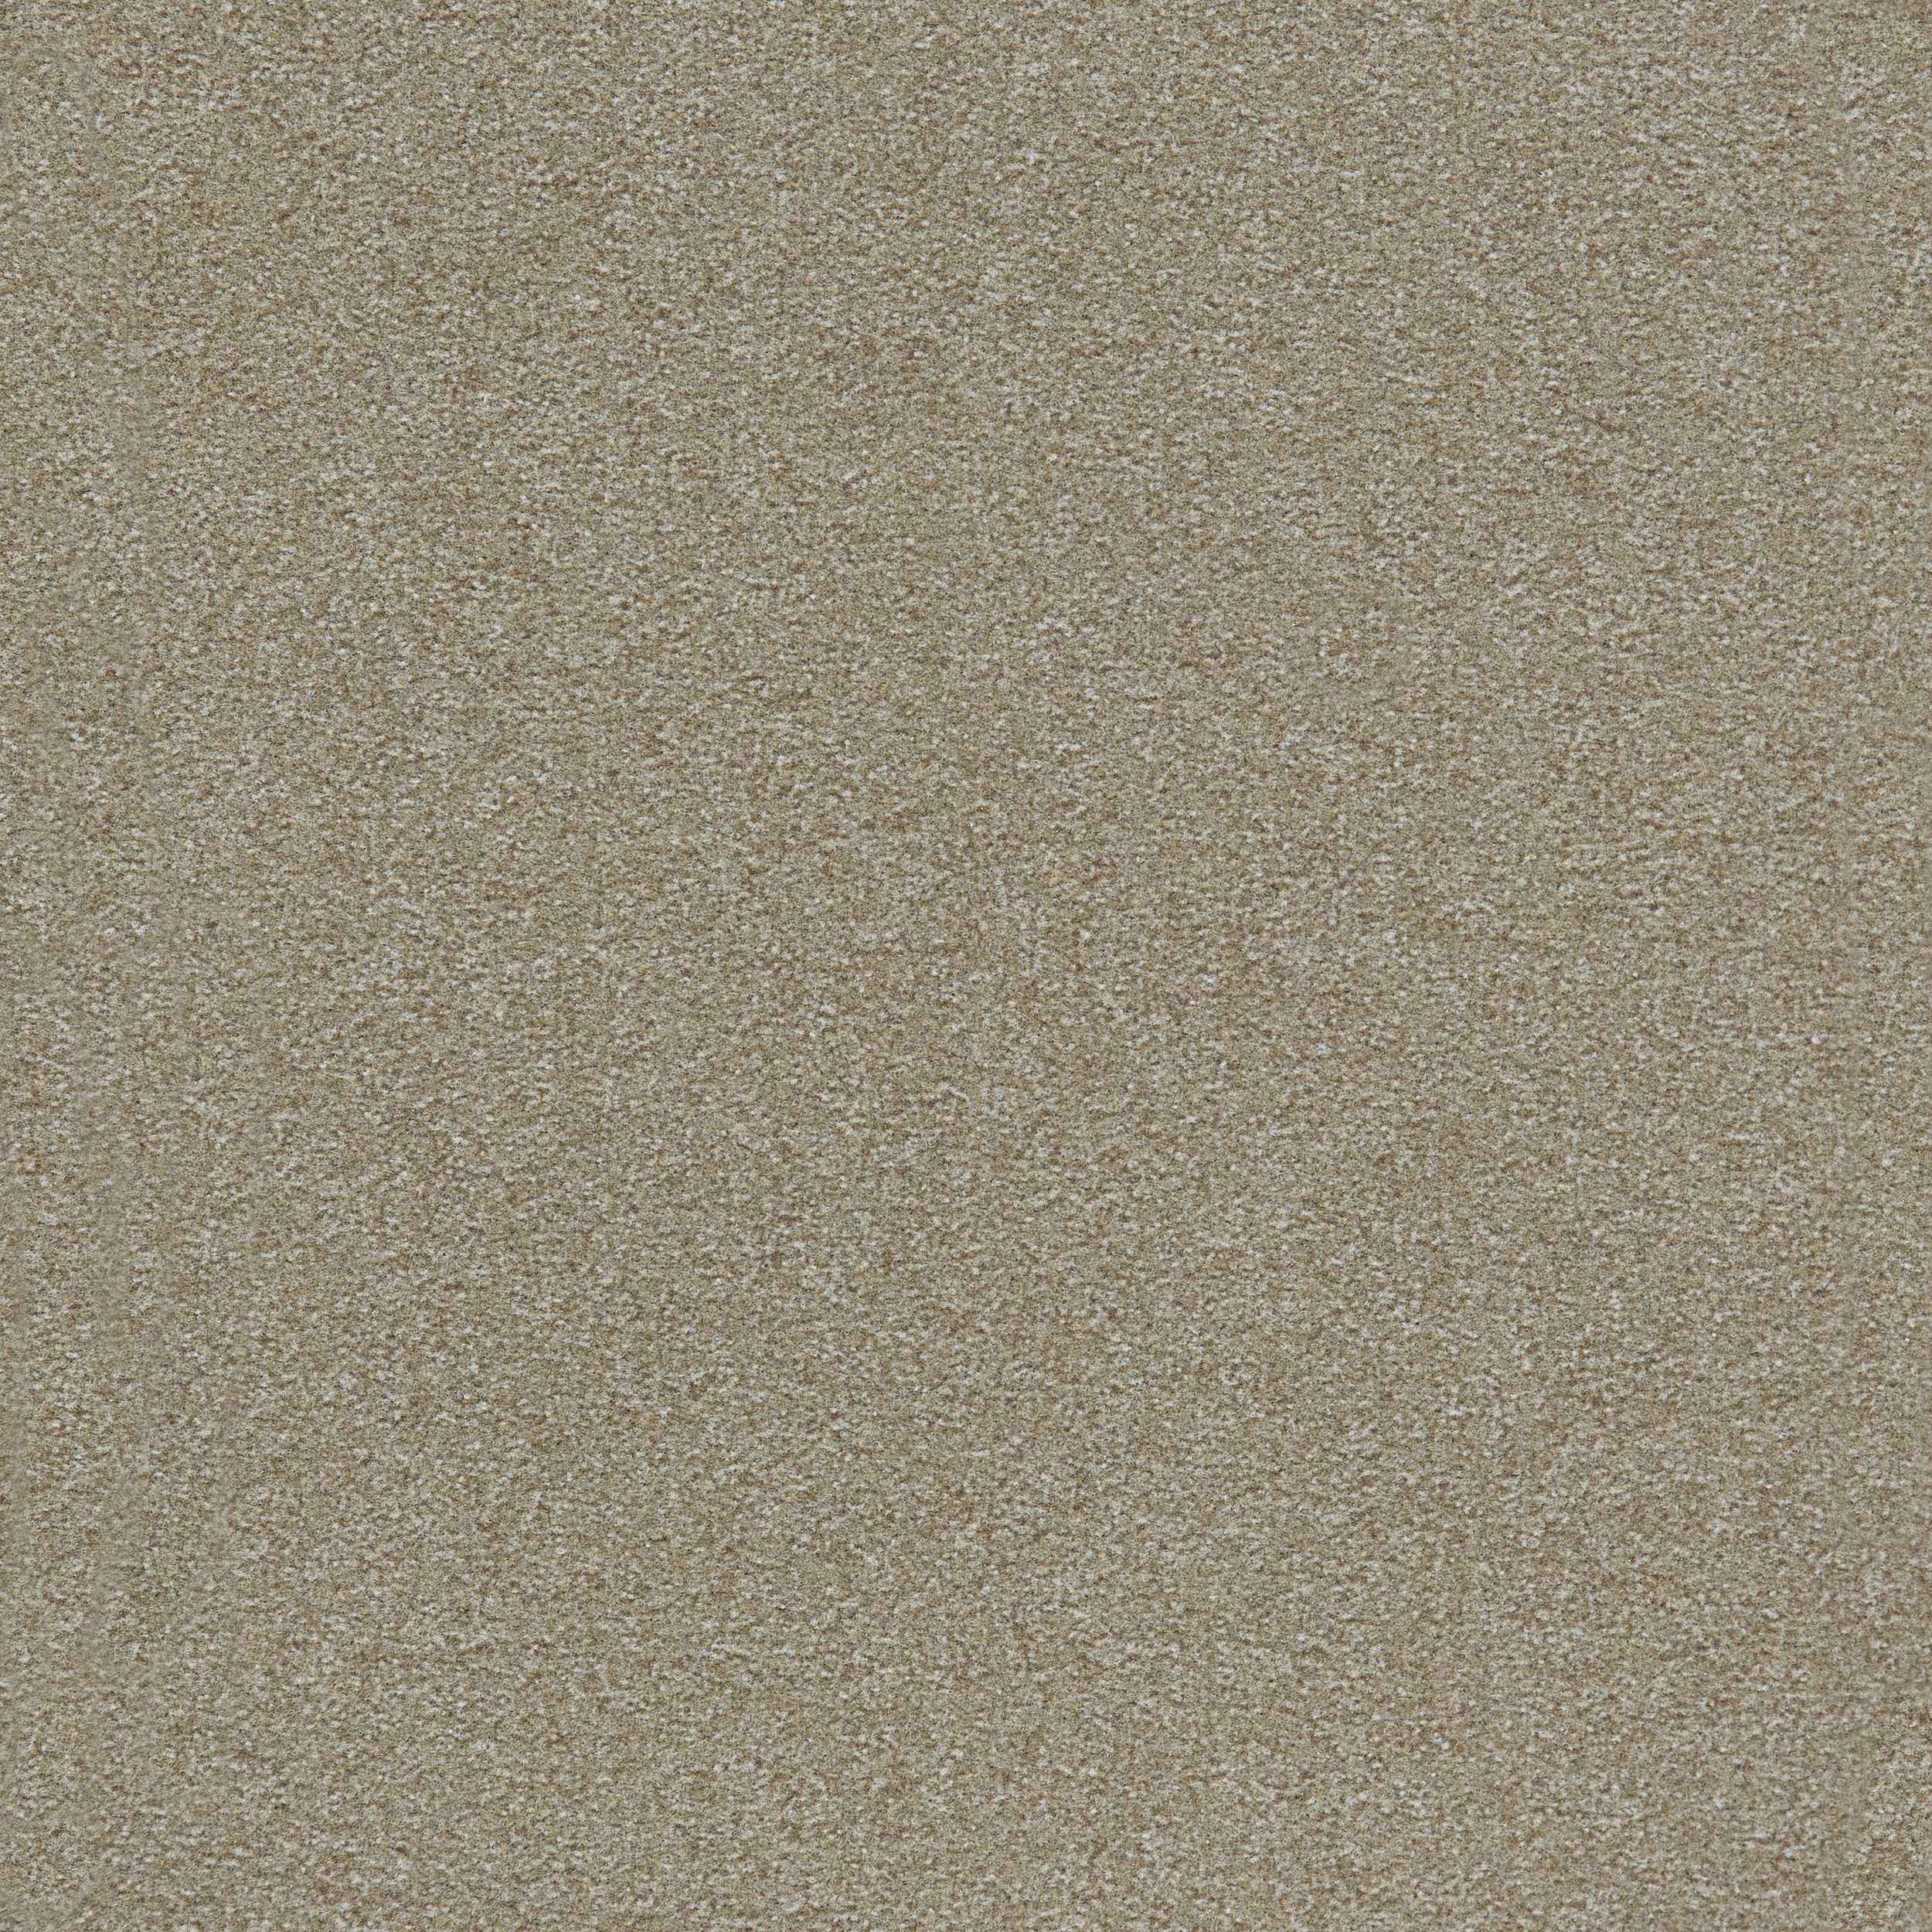 Heuga 725 Carpet Tile In Oyster número de imagen 2